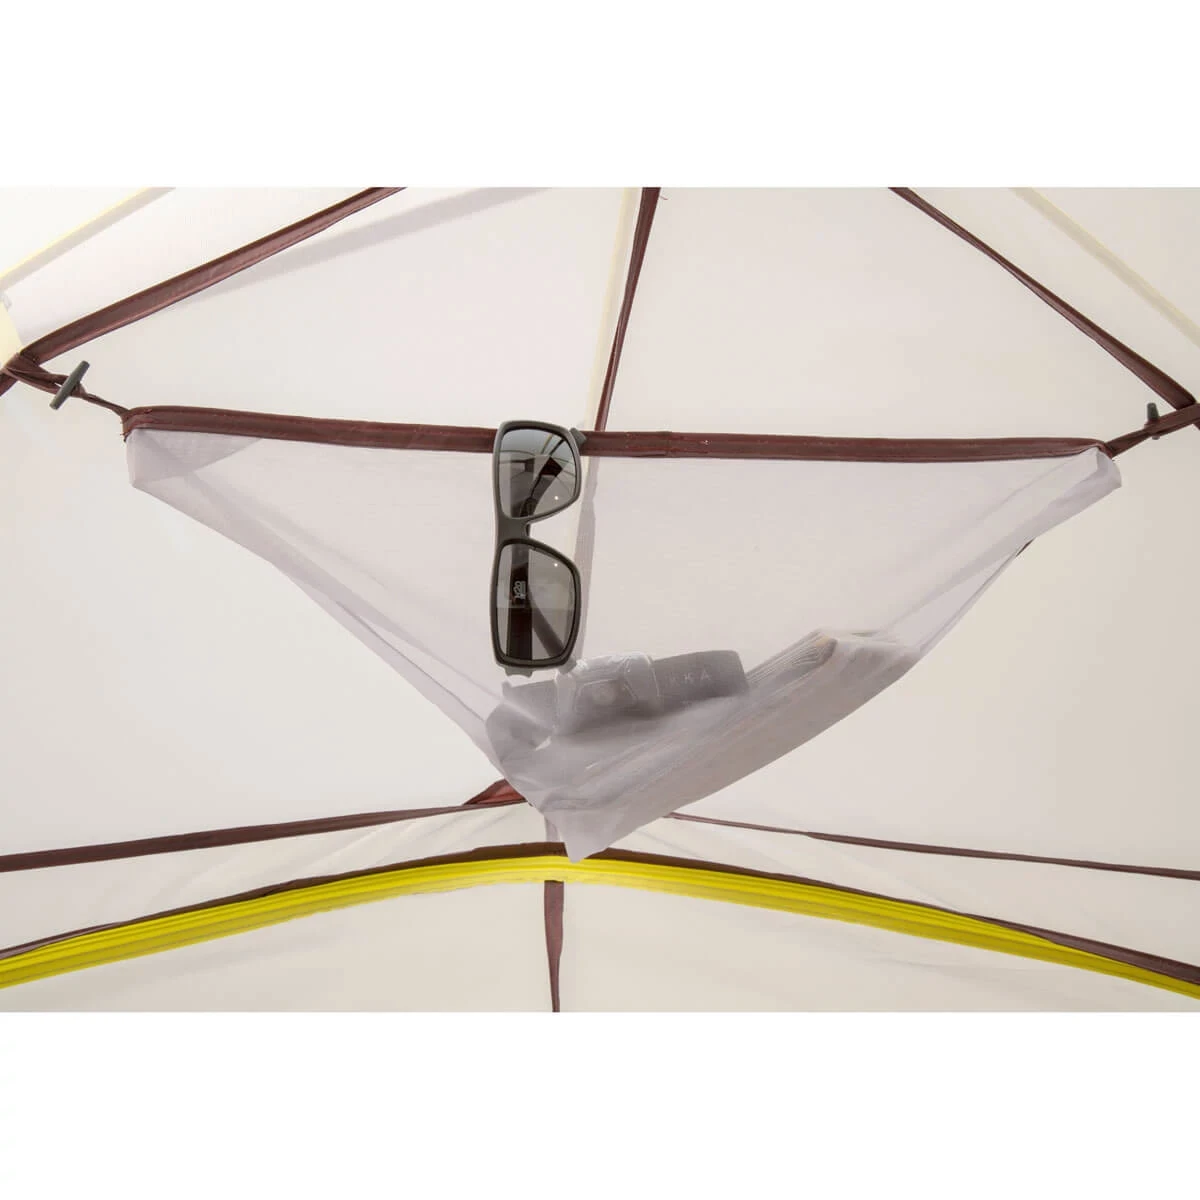 Close up of Summer Pass 2 tent gear loft